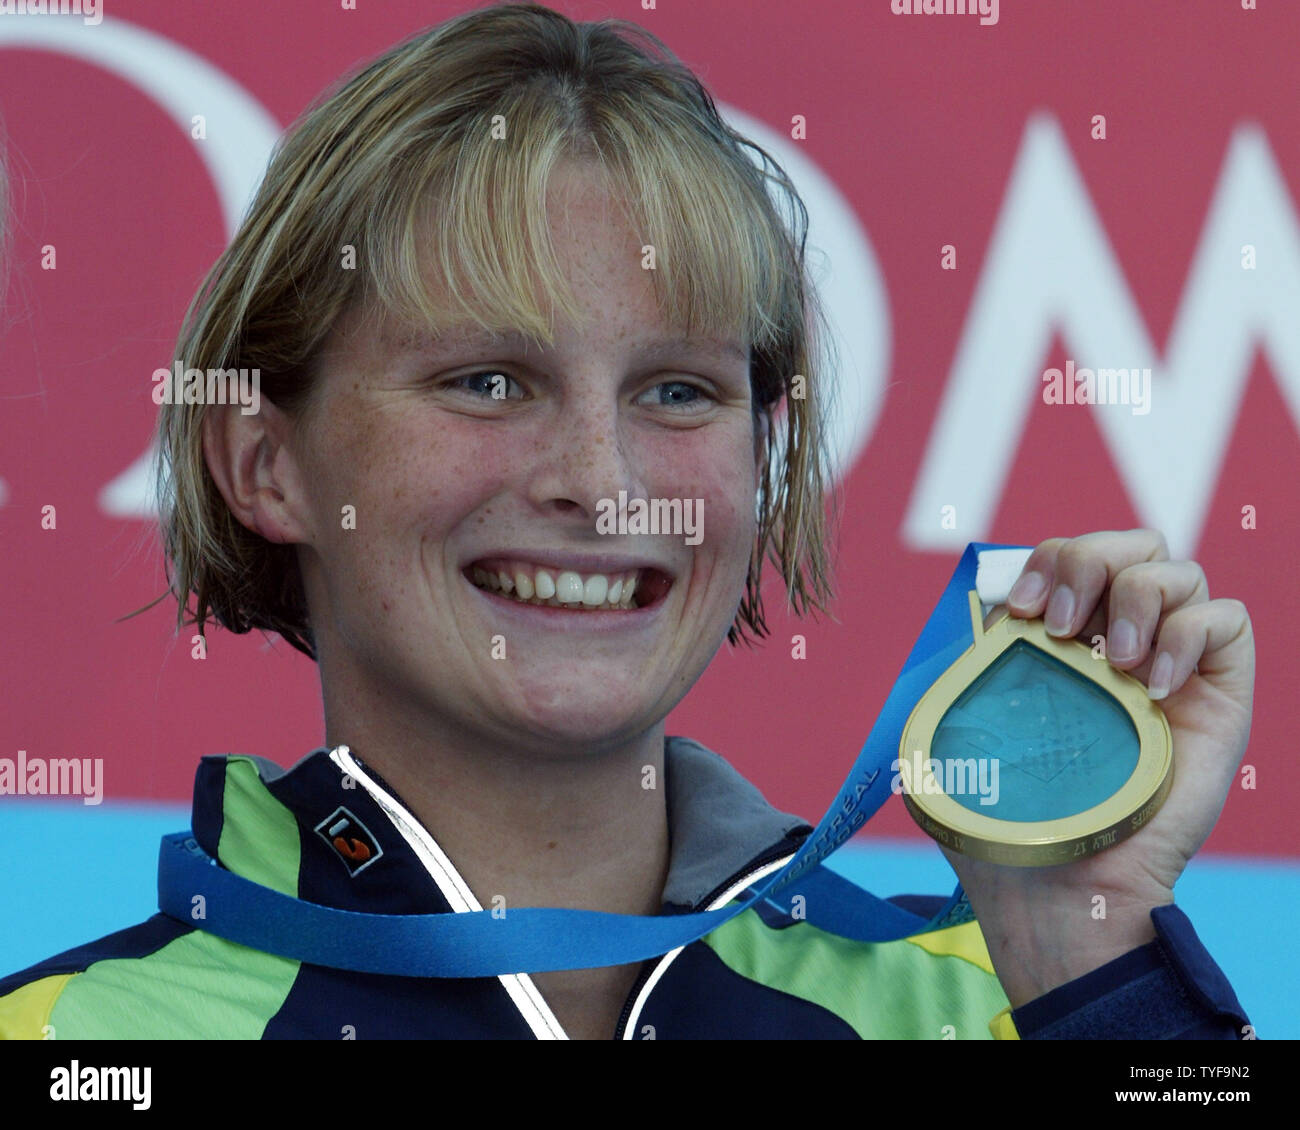 Nuotatore australiana Leisel Jones brandisce la sua medaglia d'oro dalla donna di 200 metri rana gara finale alla XI Campionati del Mondo di nuoto FINA a Montreal Canada il 29 luglio 2005. Jones ha rotto il record del mondo con un tempo di 2:21.72 minuti. (UPI foto / Grazia Chiu) Foto Stock